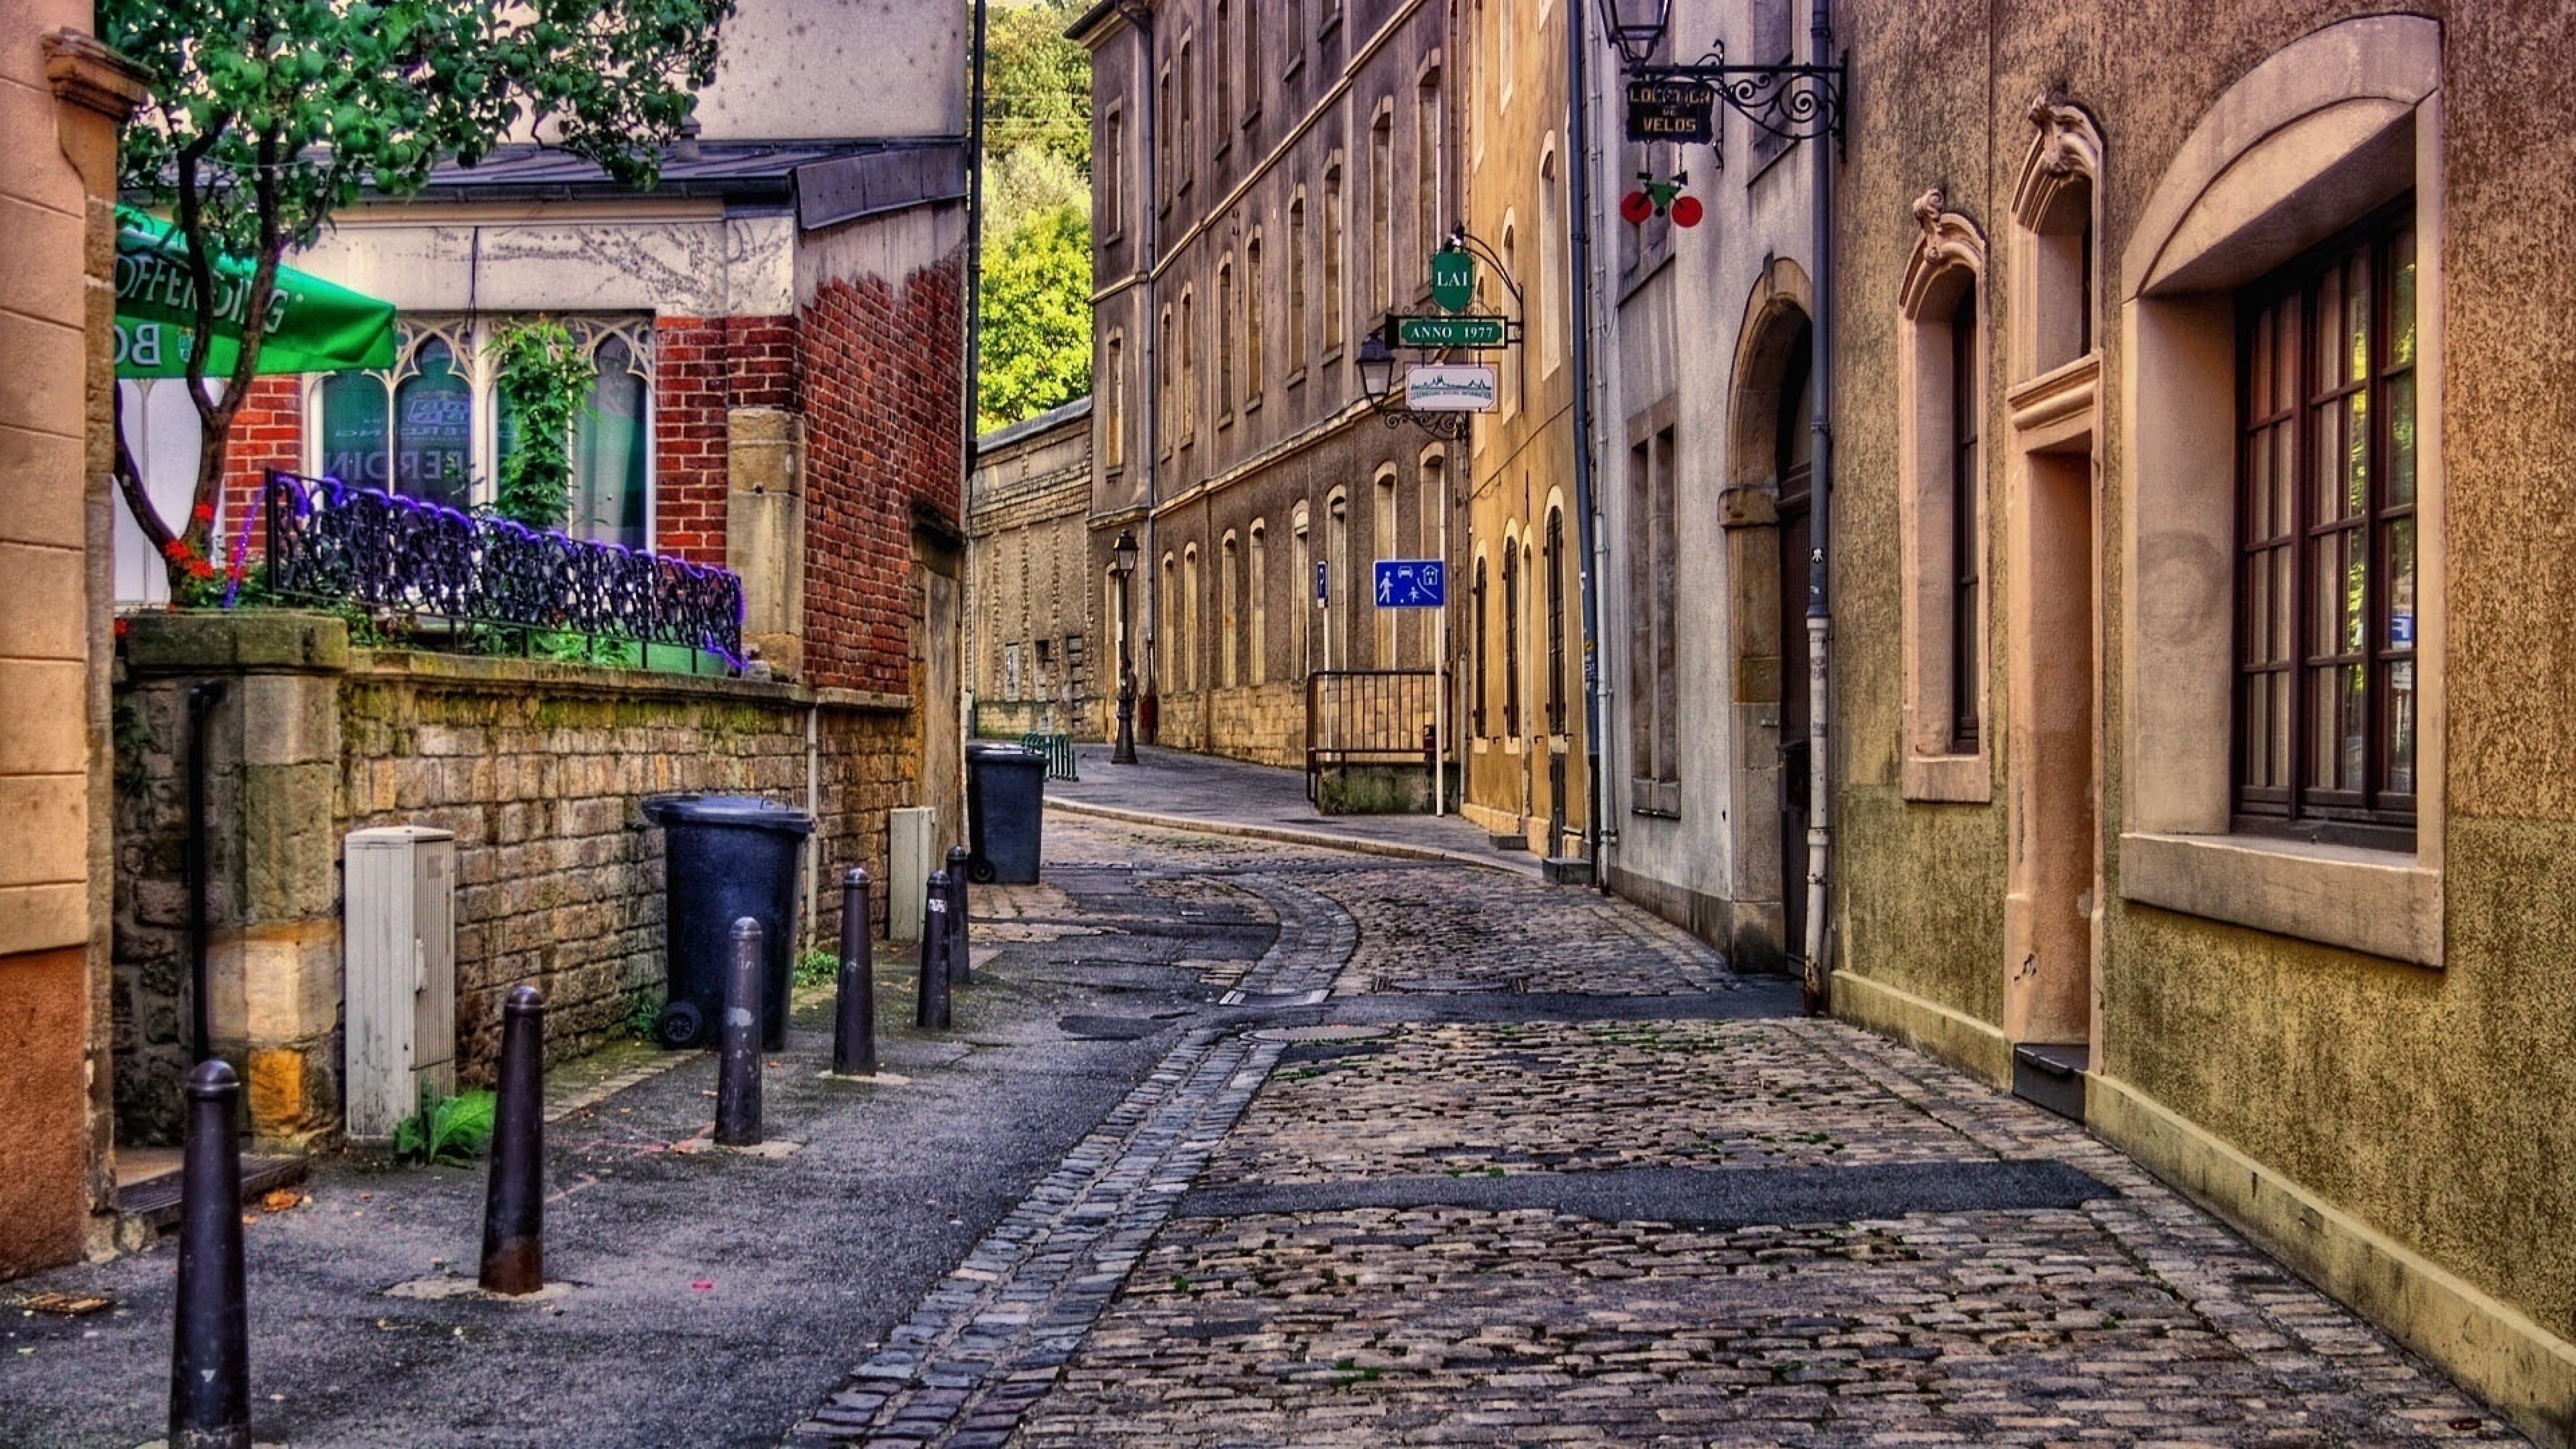 Фото улиц на телефон. Брюссель улочки. Франция 19 век фон улица. Эдинбург Шотландия улицы. Старый двор Мюнхен.